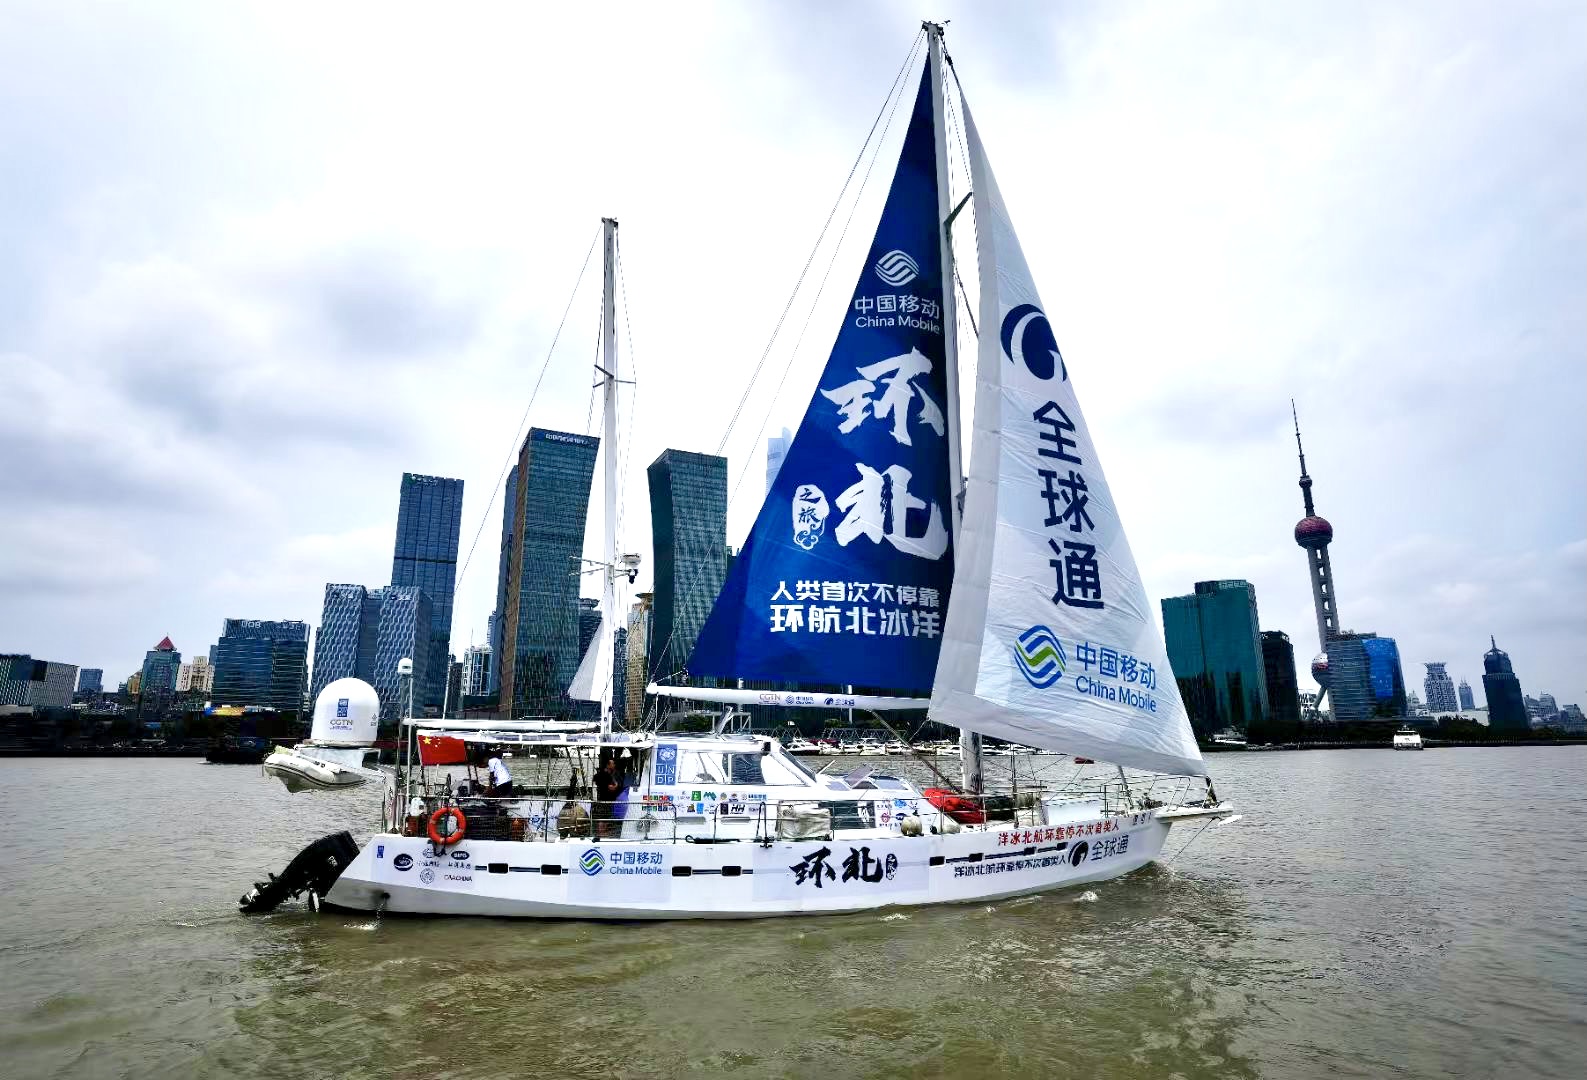 践行新时代航海精神 中国移动全球通号环航北冰洋之旅扬帆启航